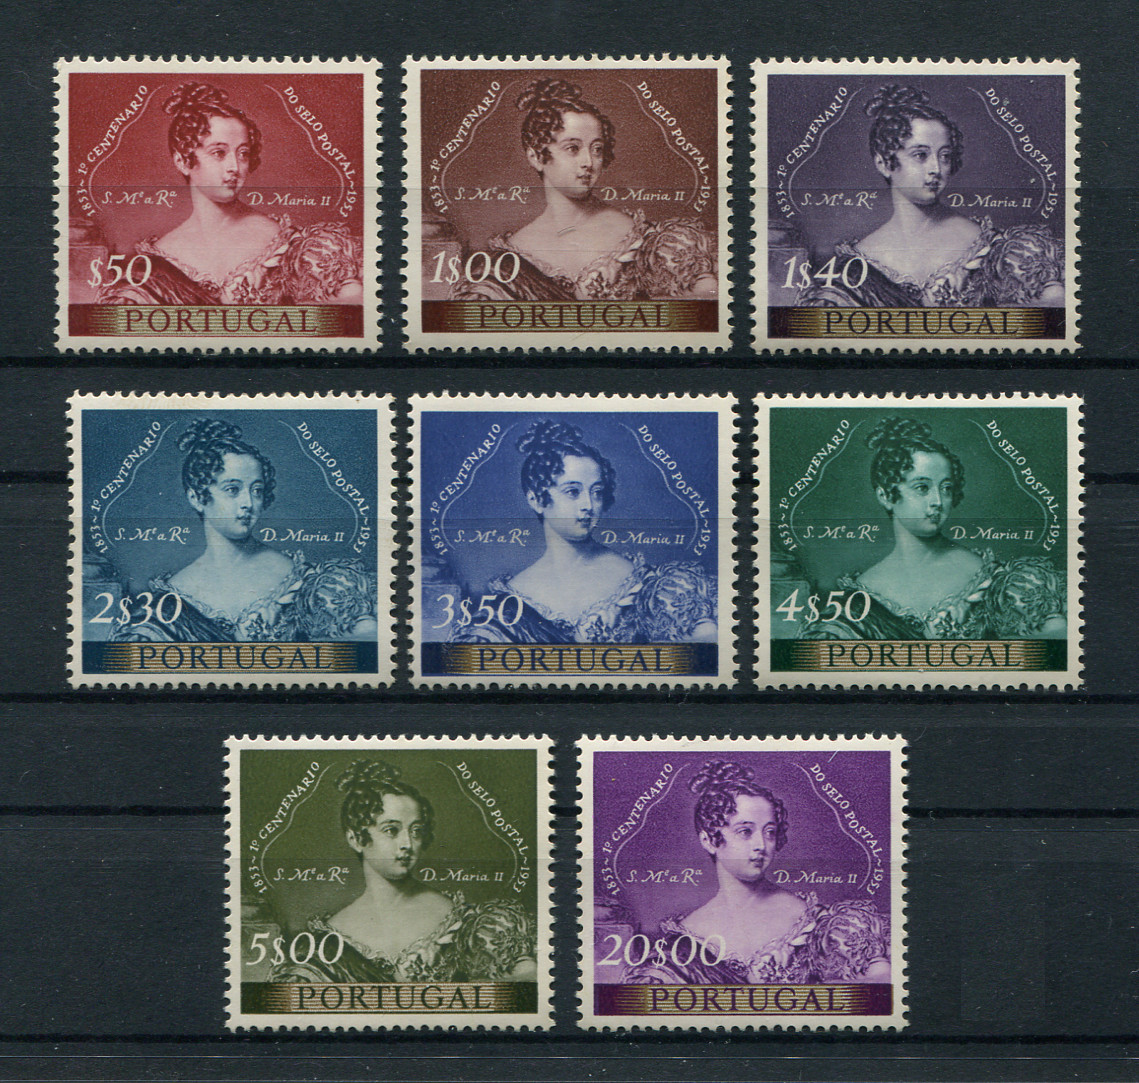 1953 - Afinsa nº 786/793. Centenário do Selo Postal Português. Série completa nova, SEM GOMA. Em boas condições. BAIXO CUSTO.